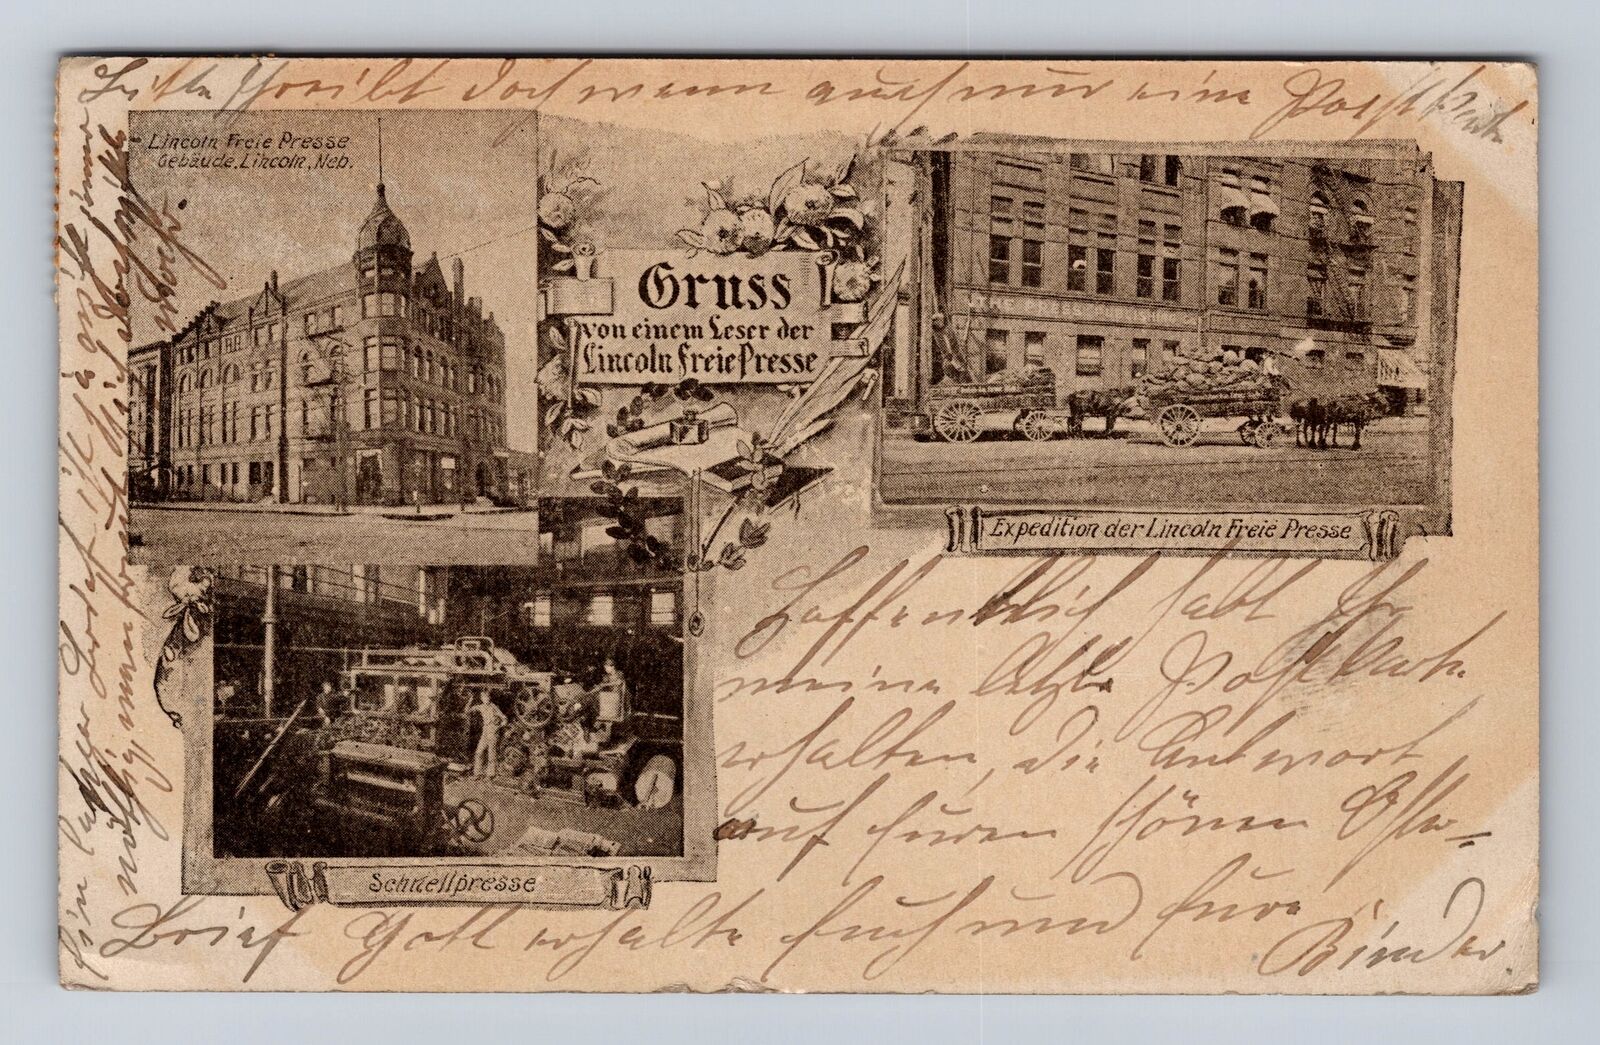 Lincoln NE-Nebraska, Lincoln Free Press Advertising, Press, Vintage Postcard